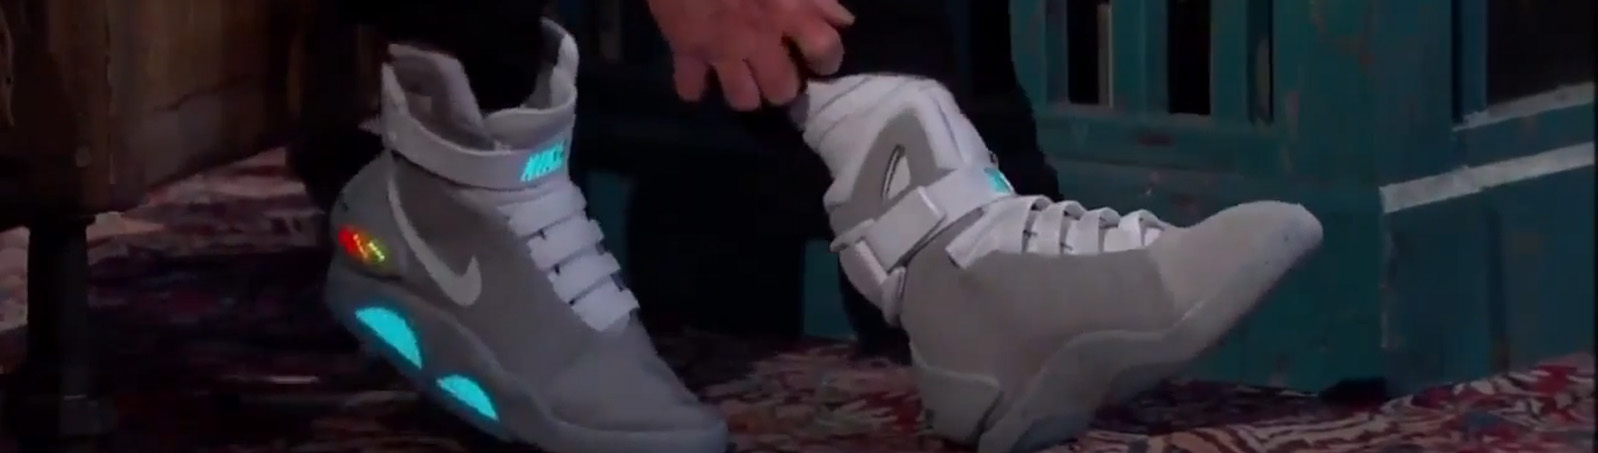 Michael J. Fox estrena primeros Nike...¡Con Robocordones!